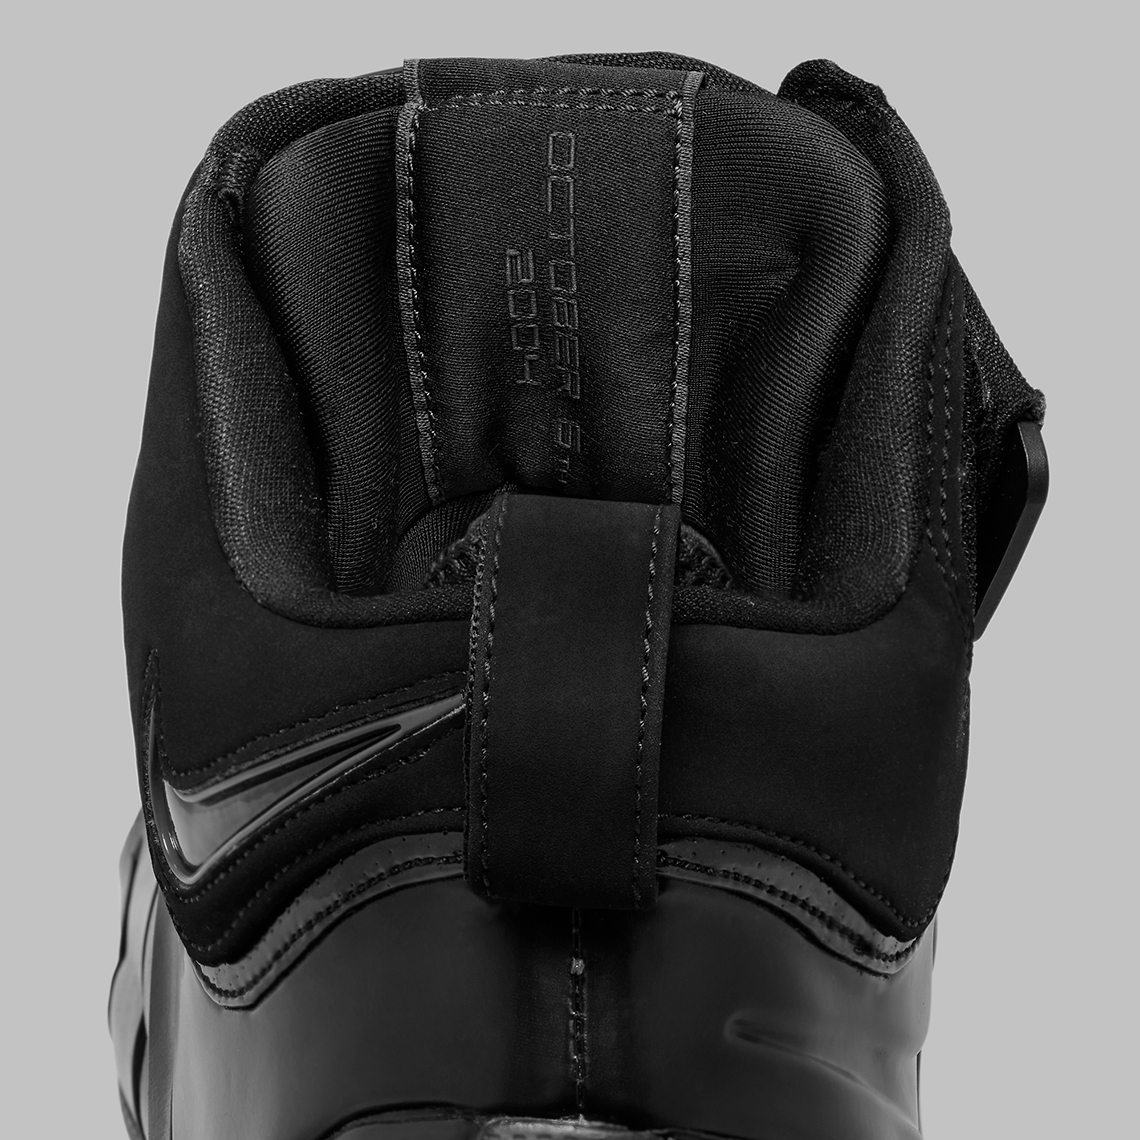 Nike Lebron 4 Black Anthracite Fj1597 001 7